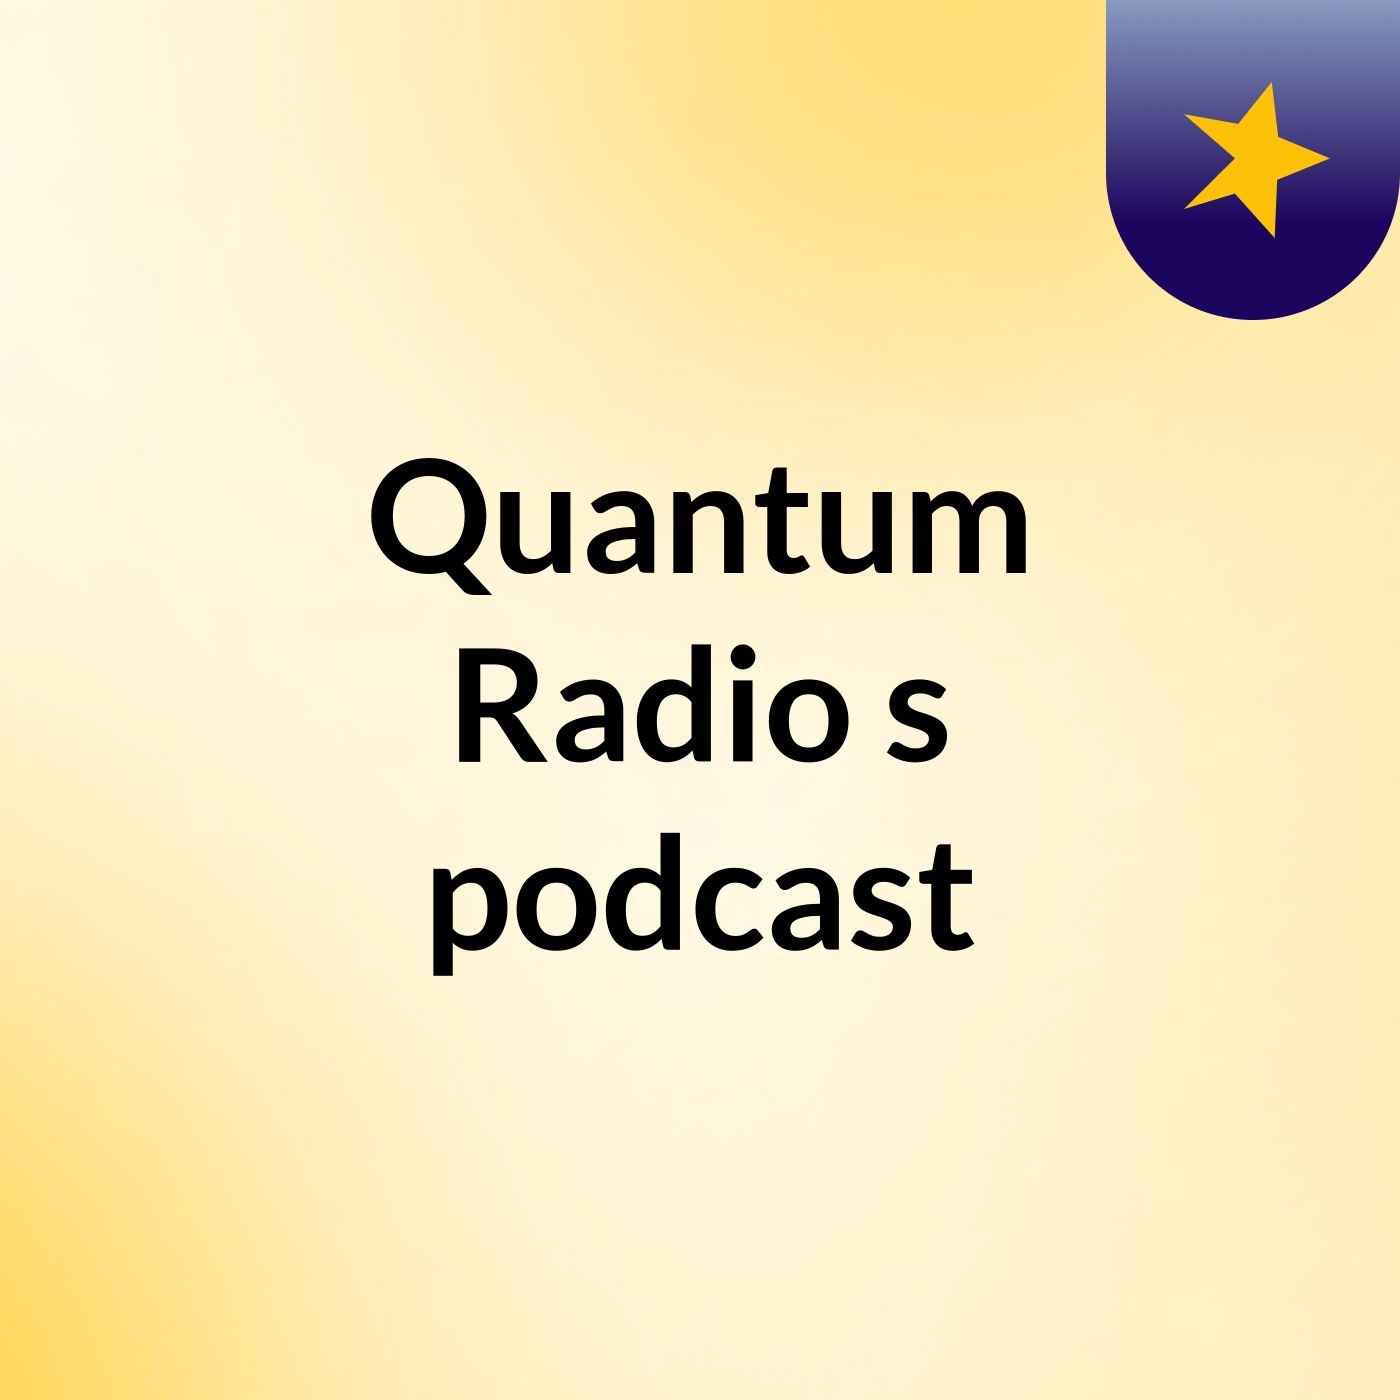 Episode 5 - Quantum Radio's podcast